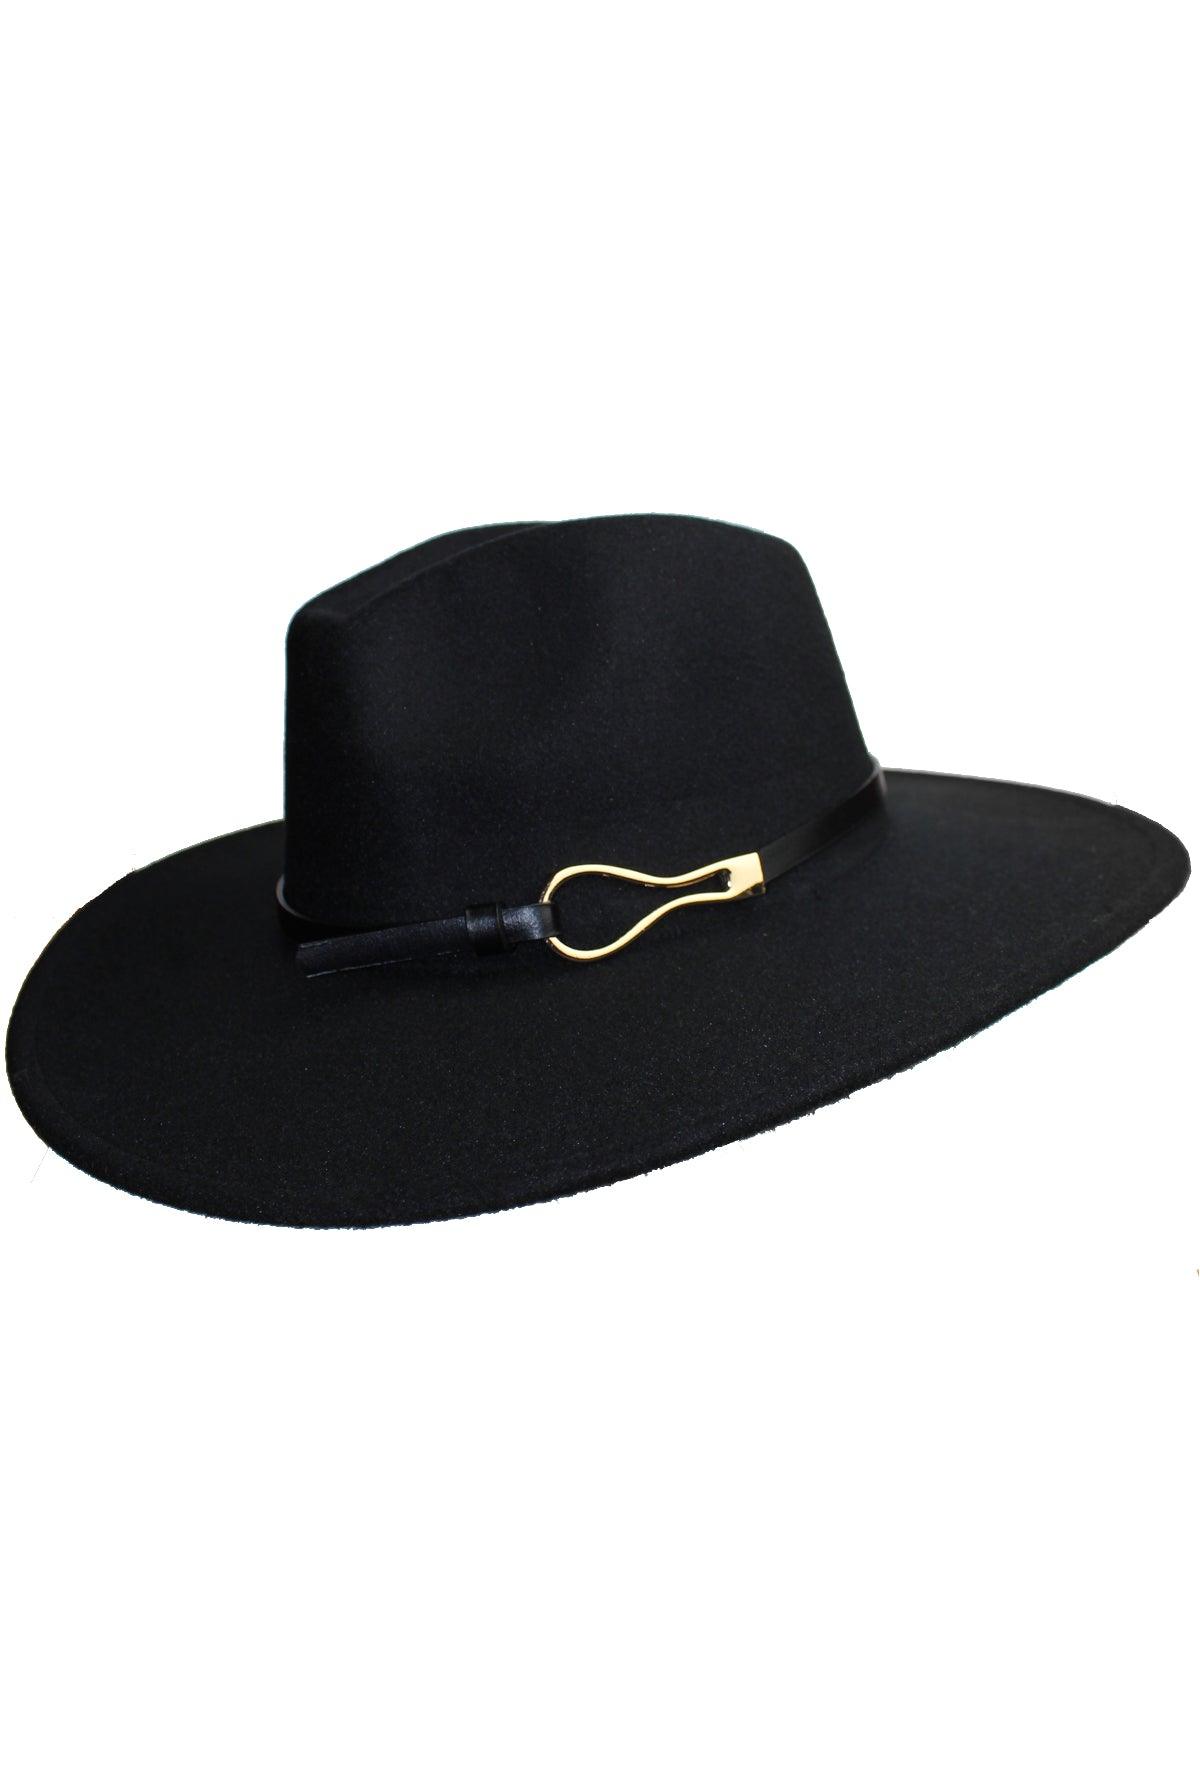 Fekete kalap - CHILI dresses - Kiegészítő